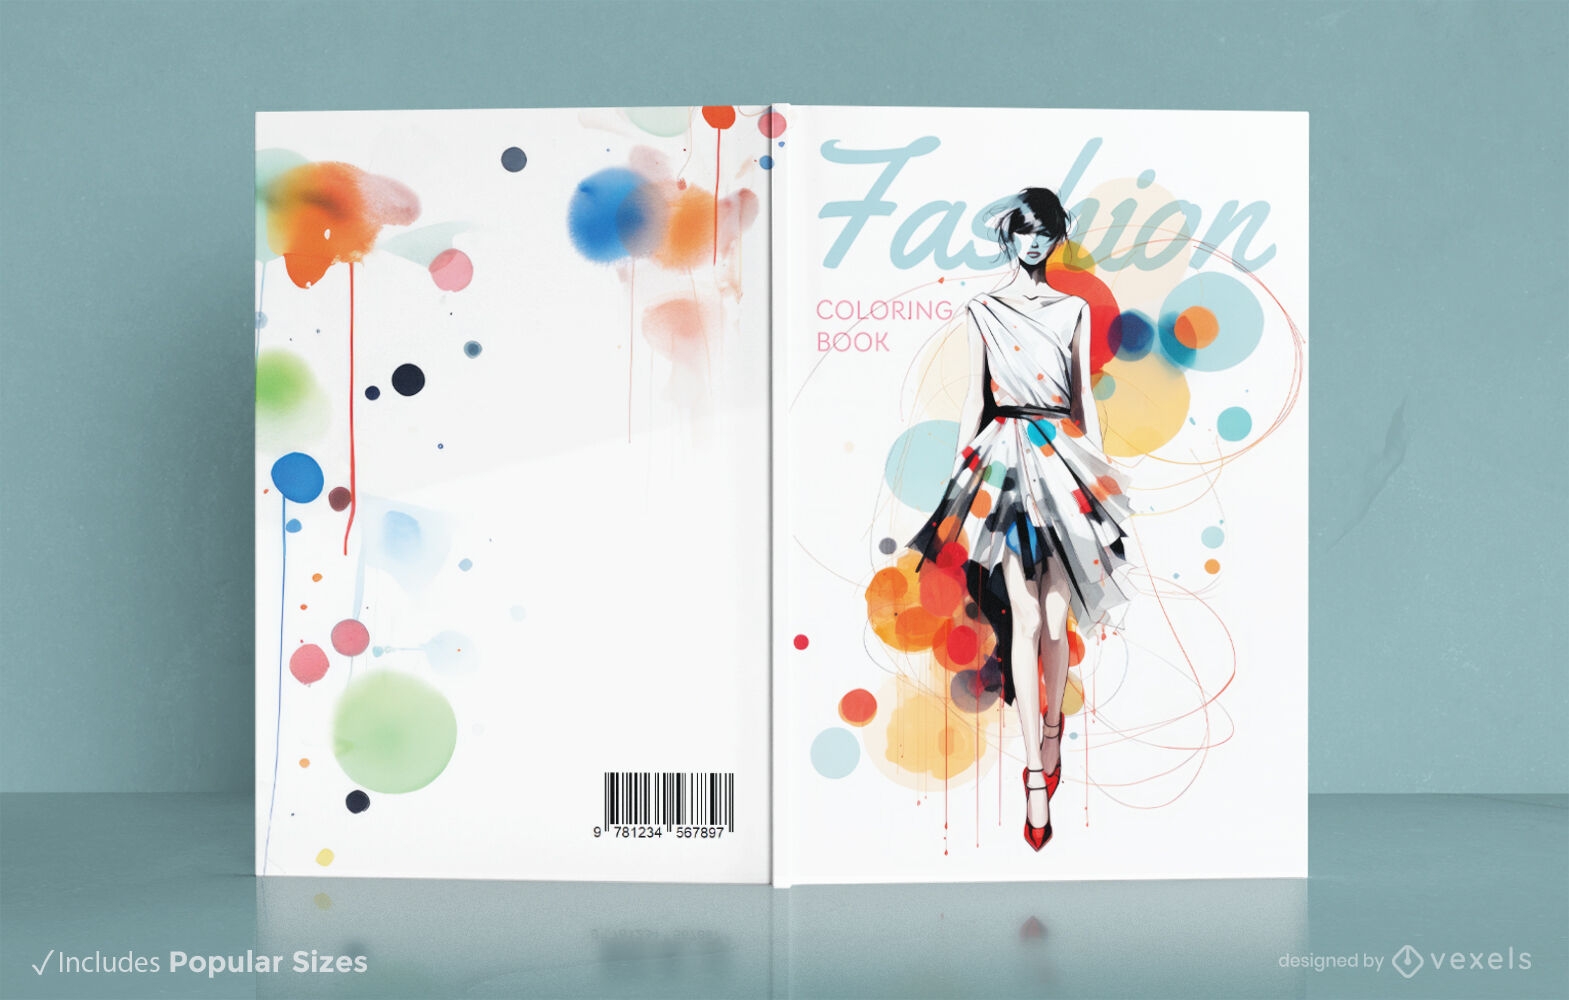 Diseño de portada de libro para colorear de moda.